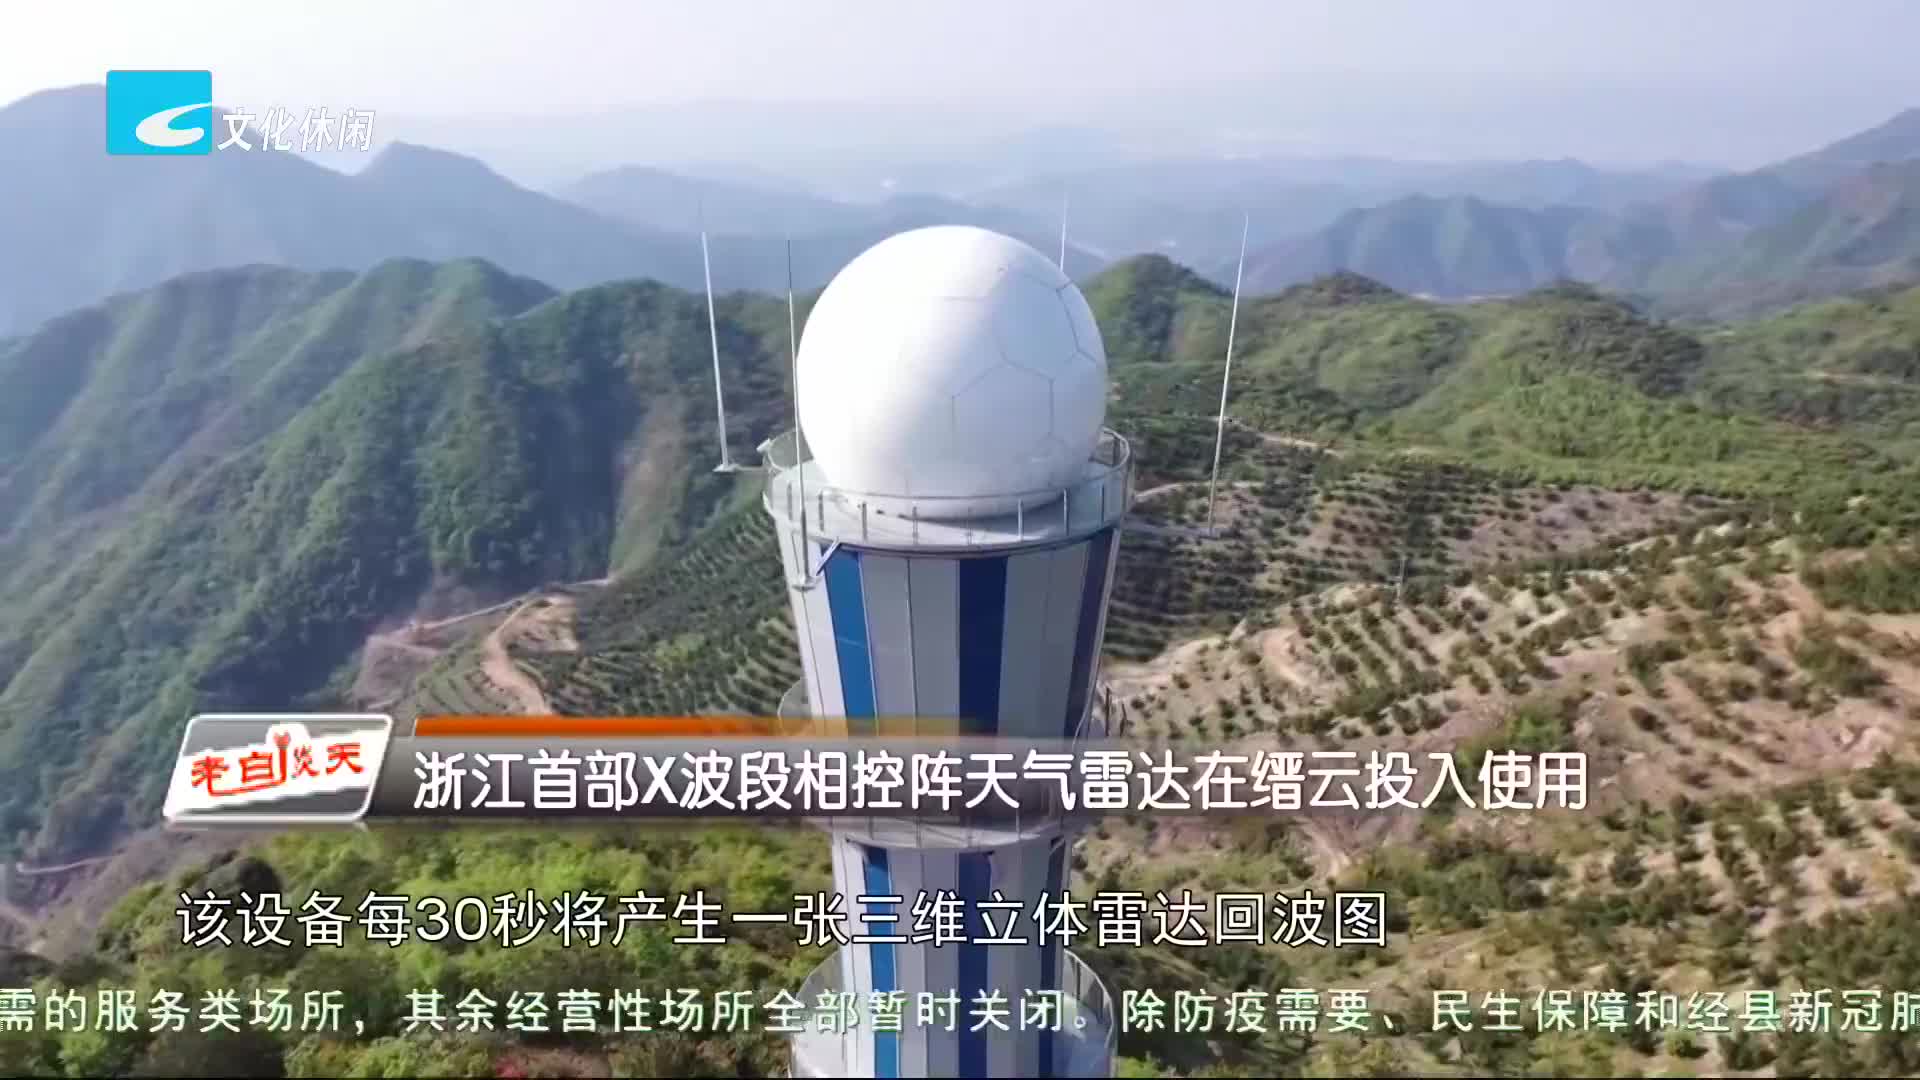 浙江首部x波段相控阵天气雷达在缙云投入使用